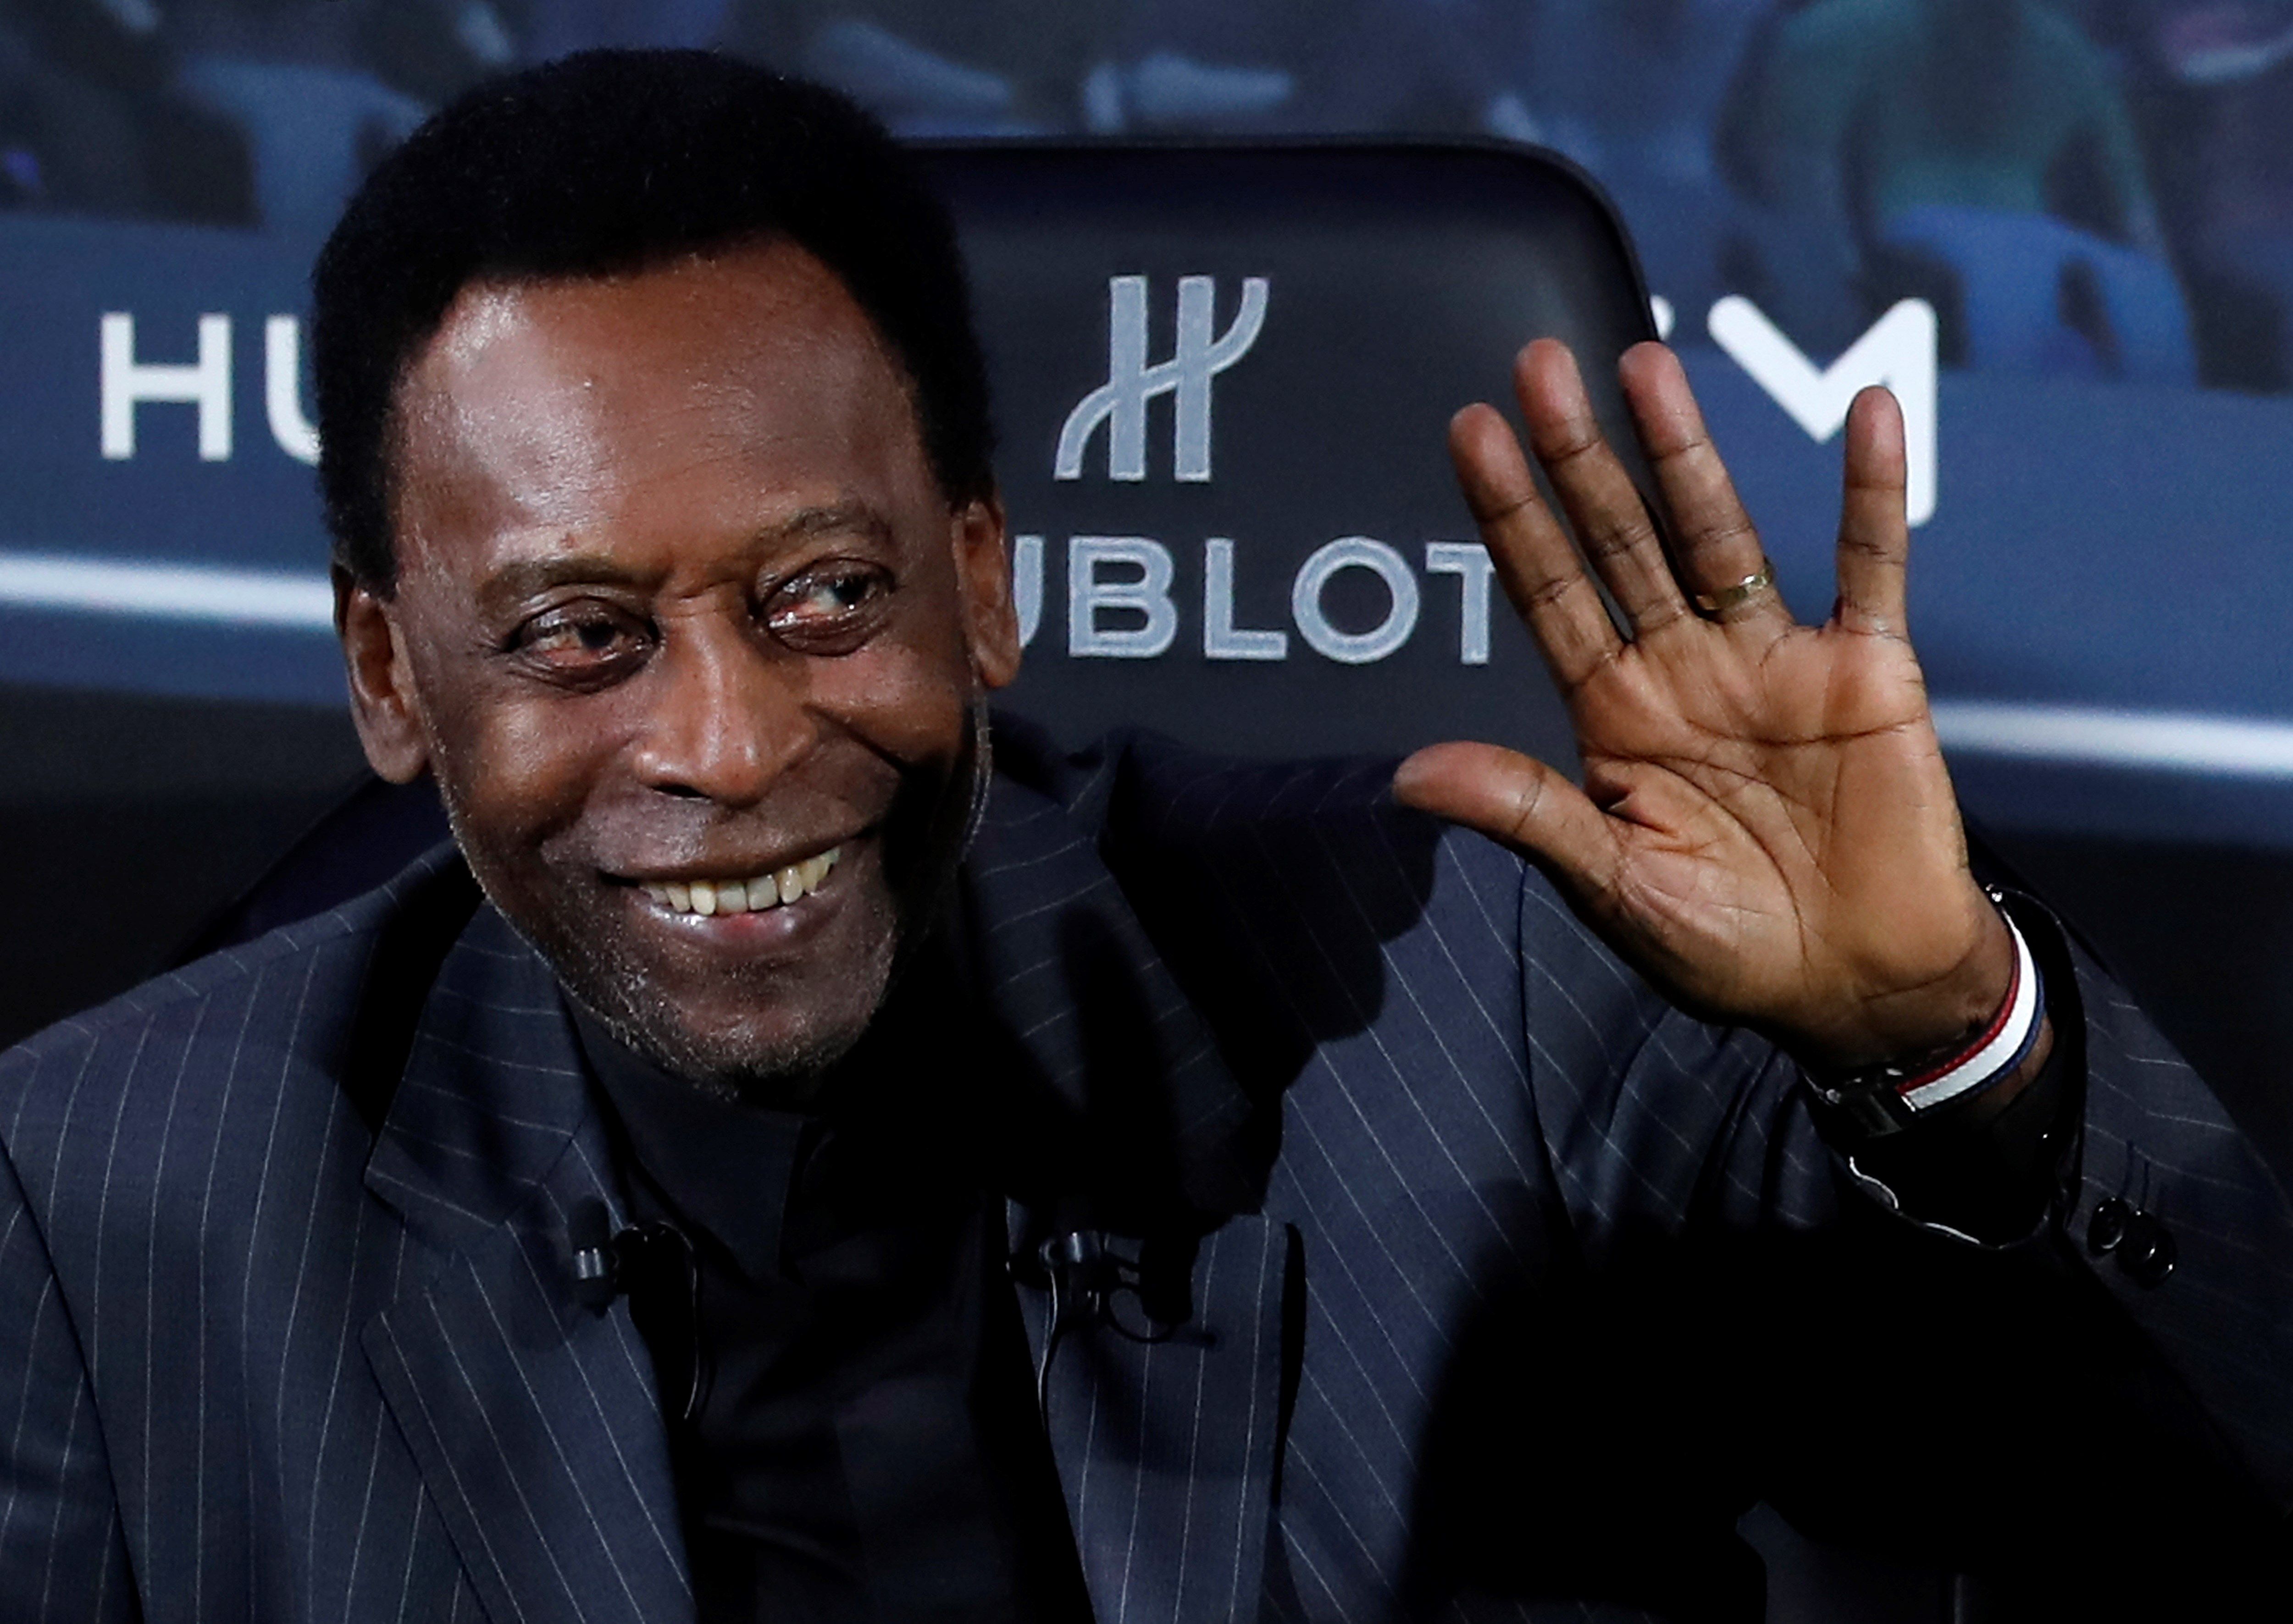 La leyenda del futbol Pelé posa durante un acto de una marca suiza de relojes. (Foto Prensa Libre: EFE)